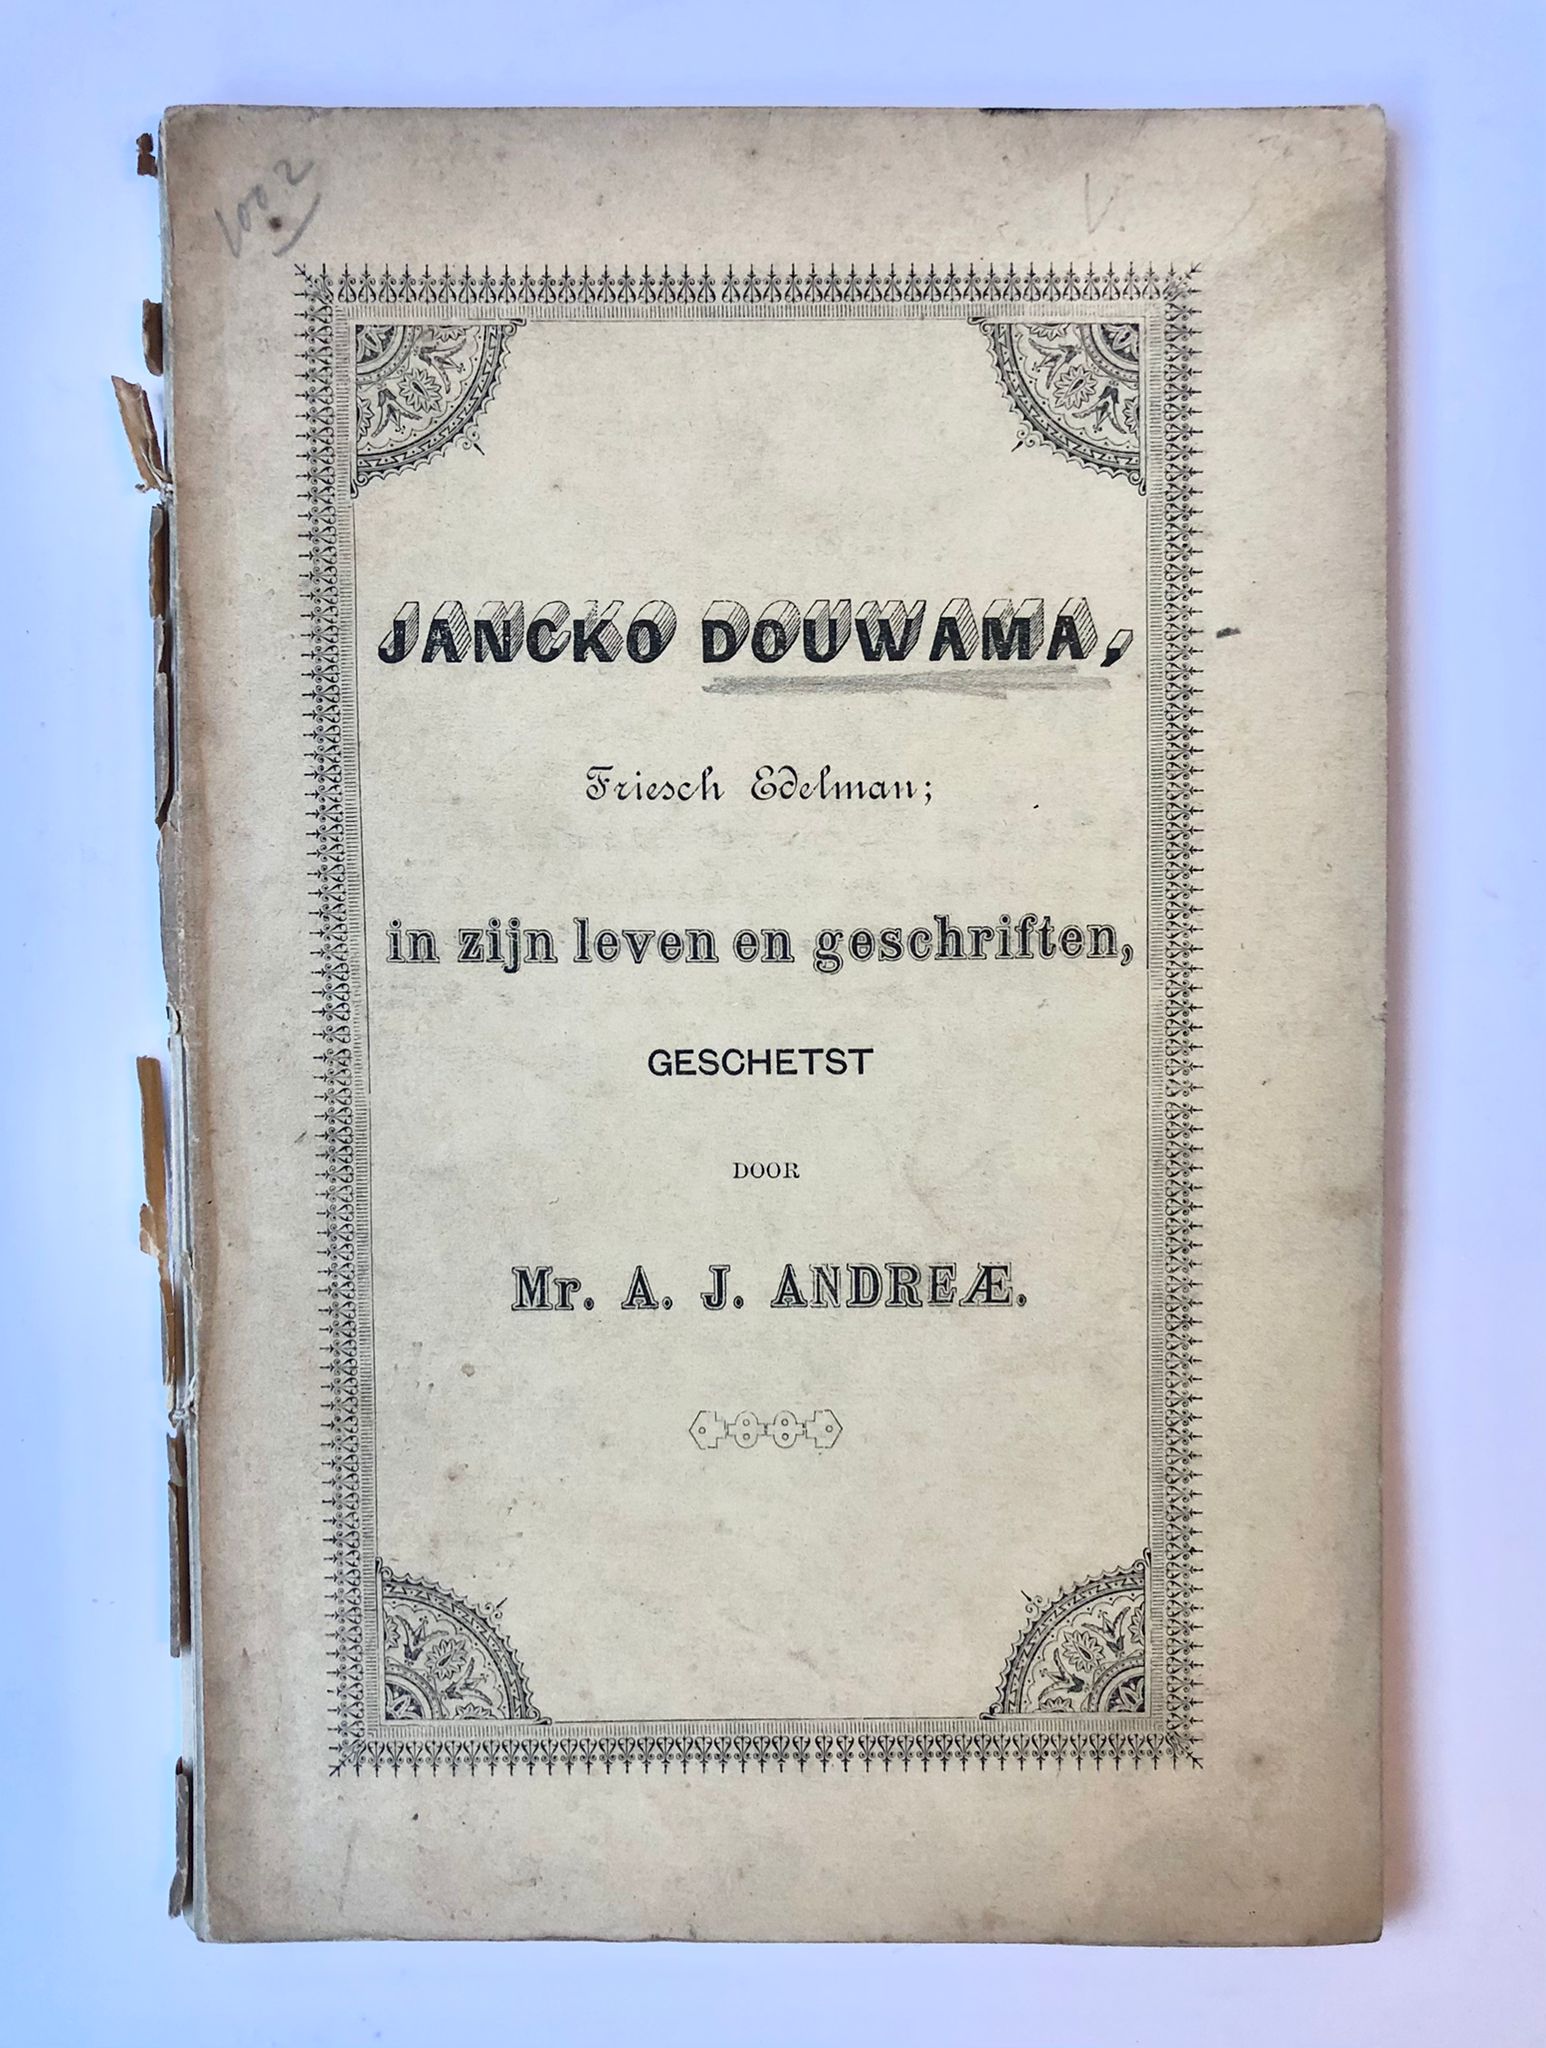 [Friesland 1893] Jancko Douwama, Friesch Edelman; in zijn leven en geschriften, geschetst door A. J. Andreæ. Uitgegeven door het Nieuwsblad ,,Oostergo”. Dokkum, 1893, 62 pp.